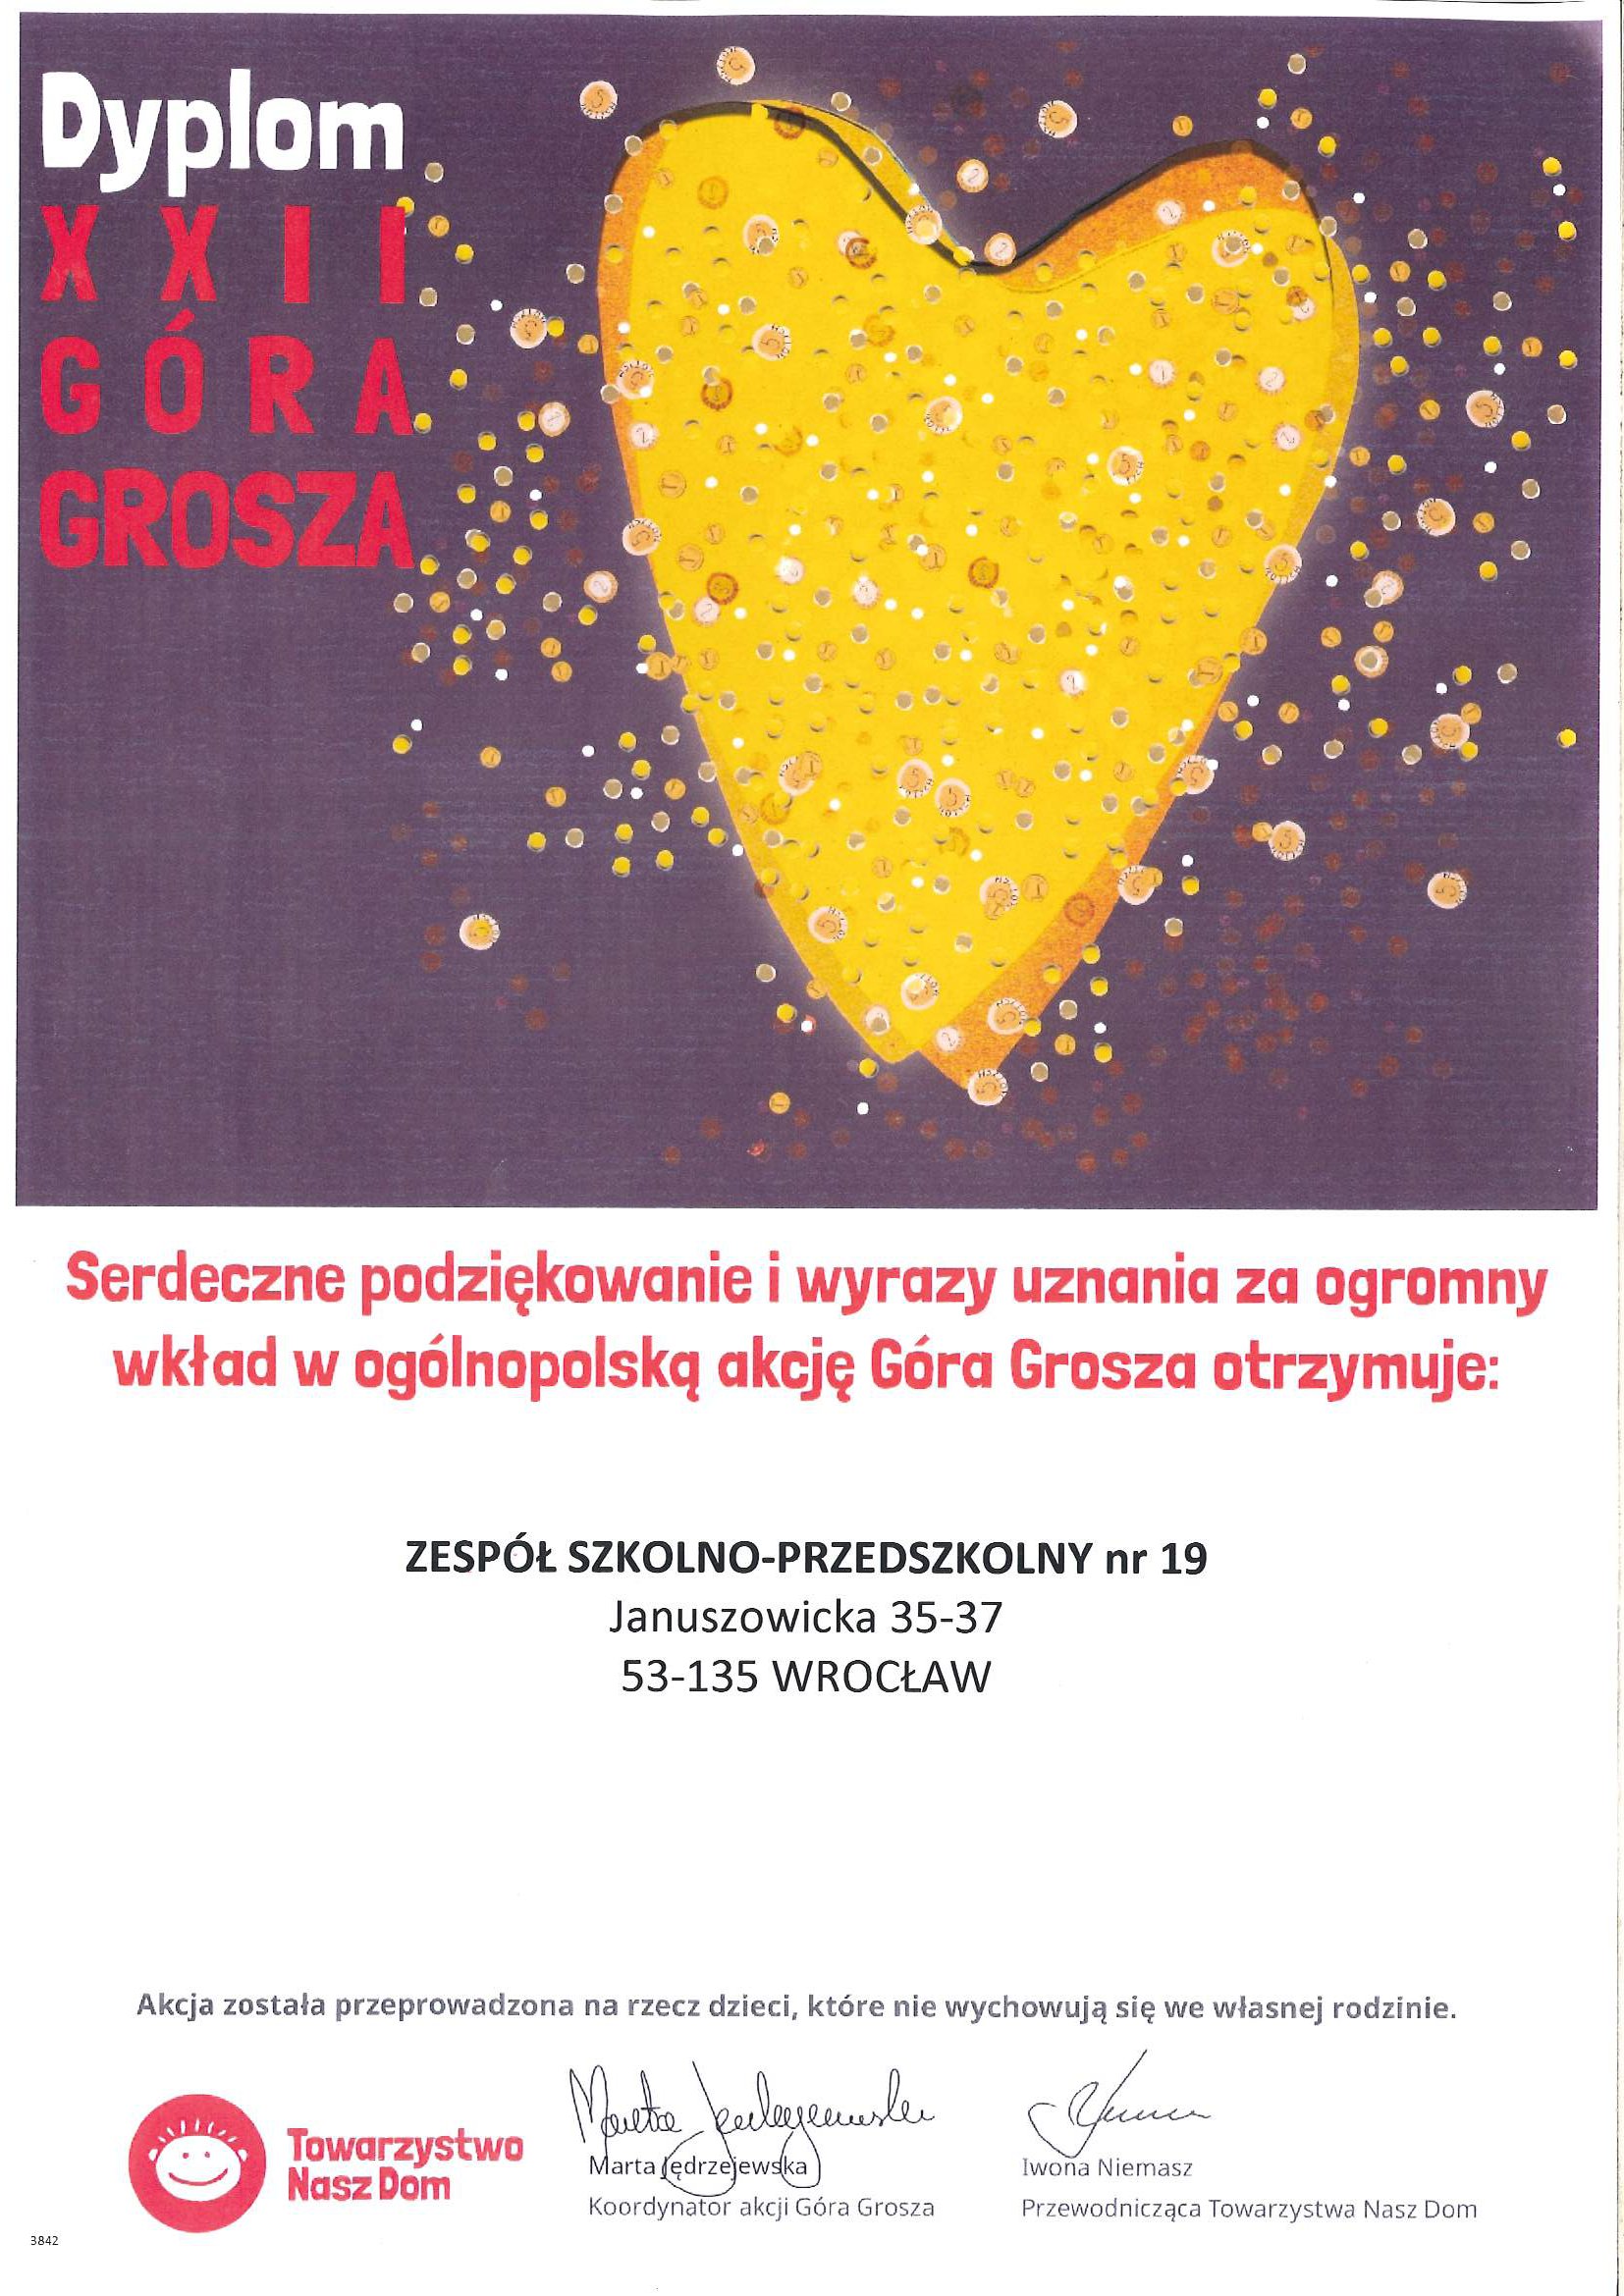 Dyplom dla ZSP nr 19 za udział w XXII edycji "Góry Grosza"